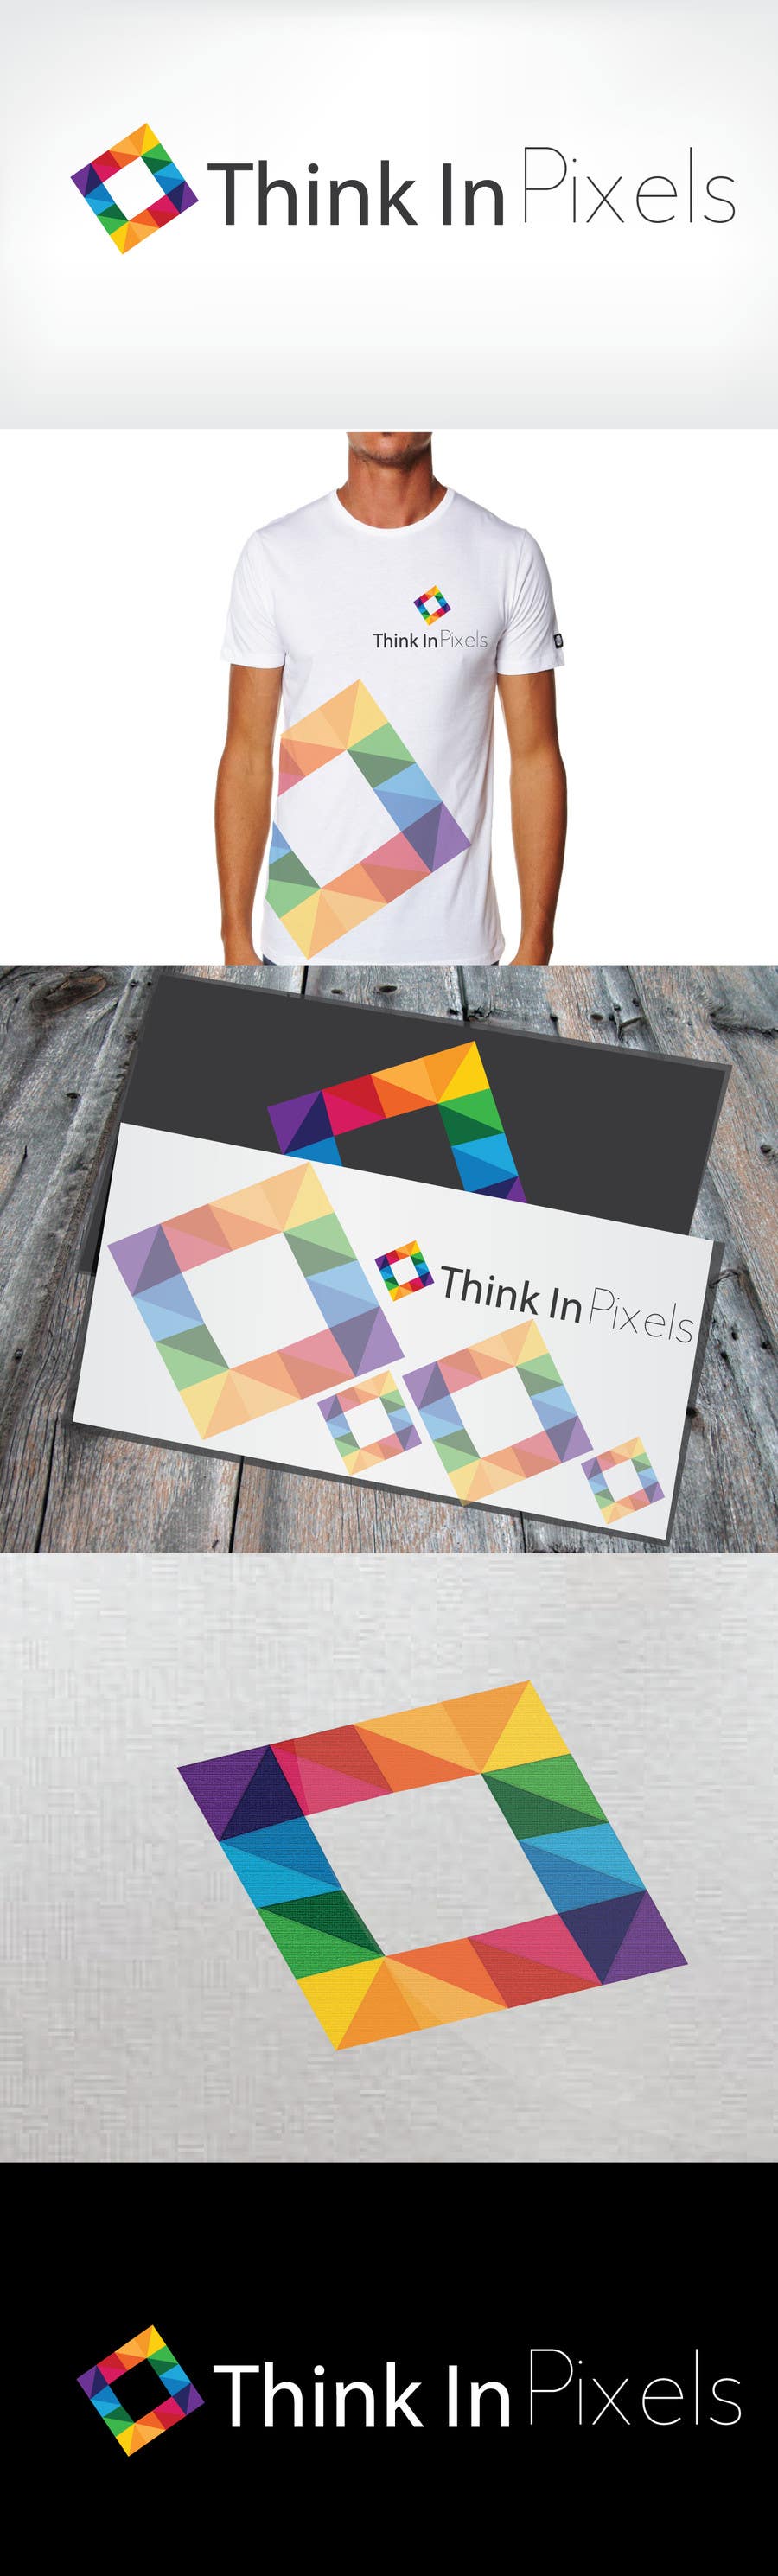 Penyertaan Peraduan #202 untuk                                                 Design a Logo for "Think In Pixels"
                                            